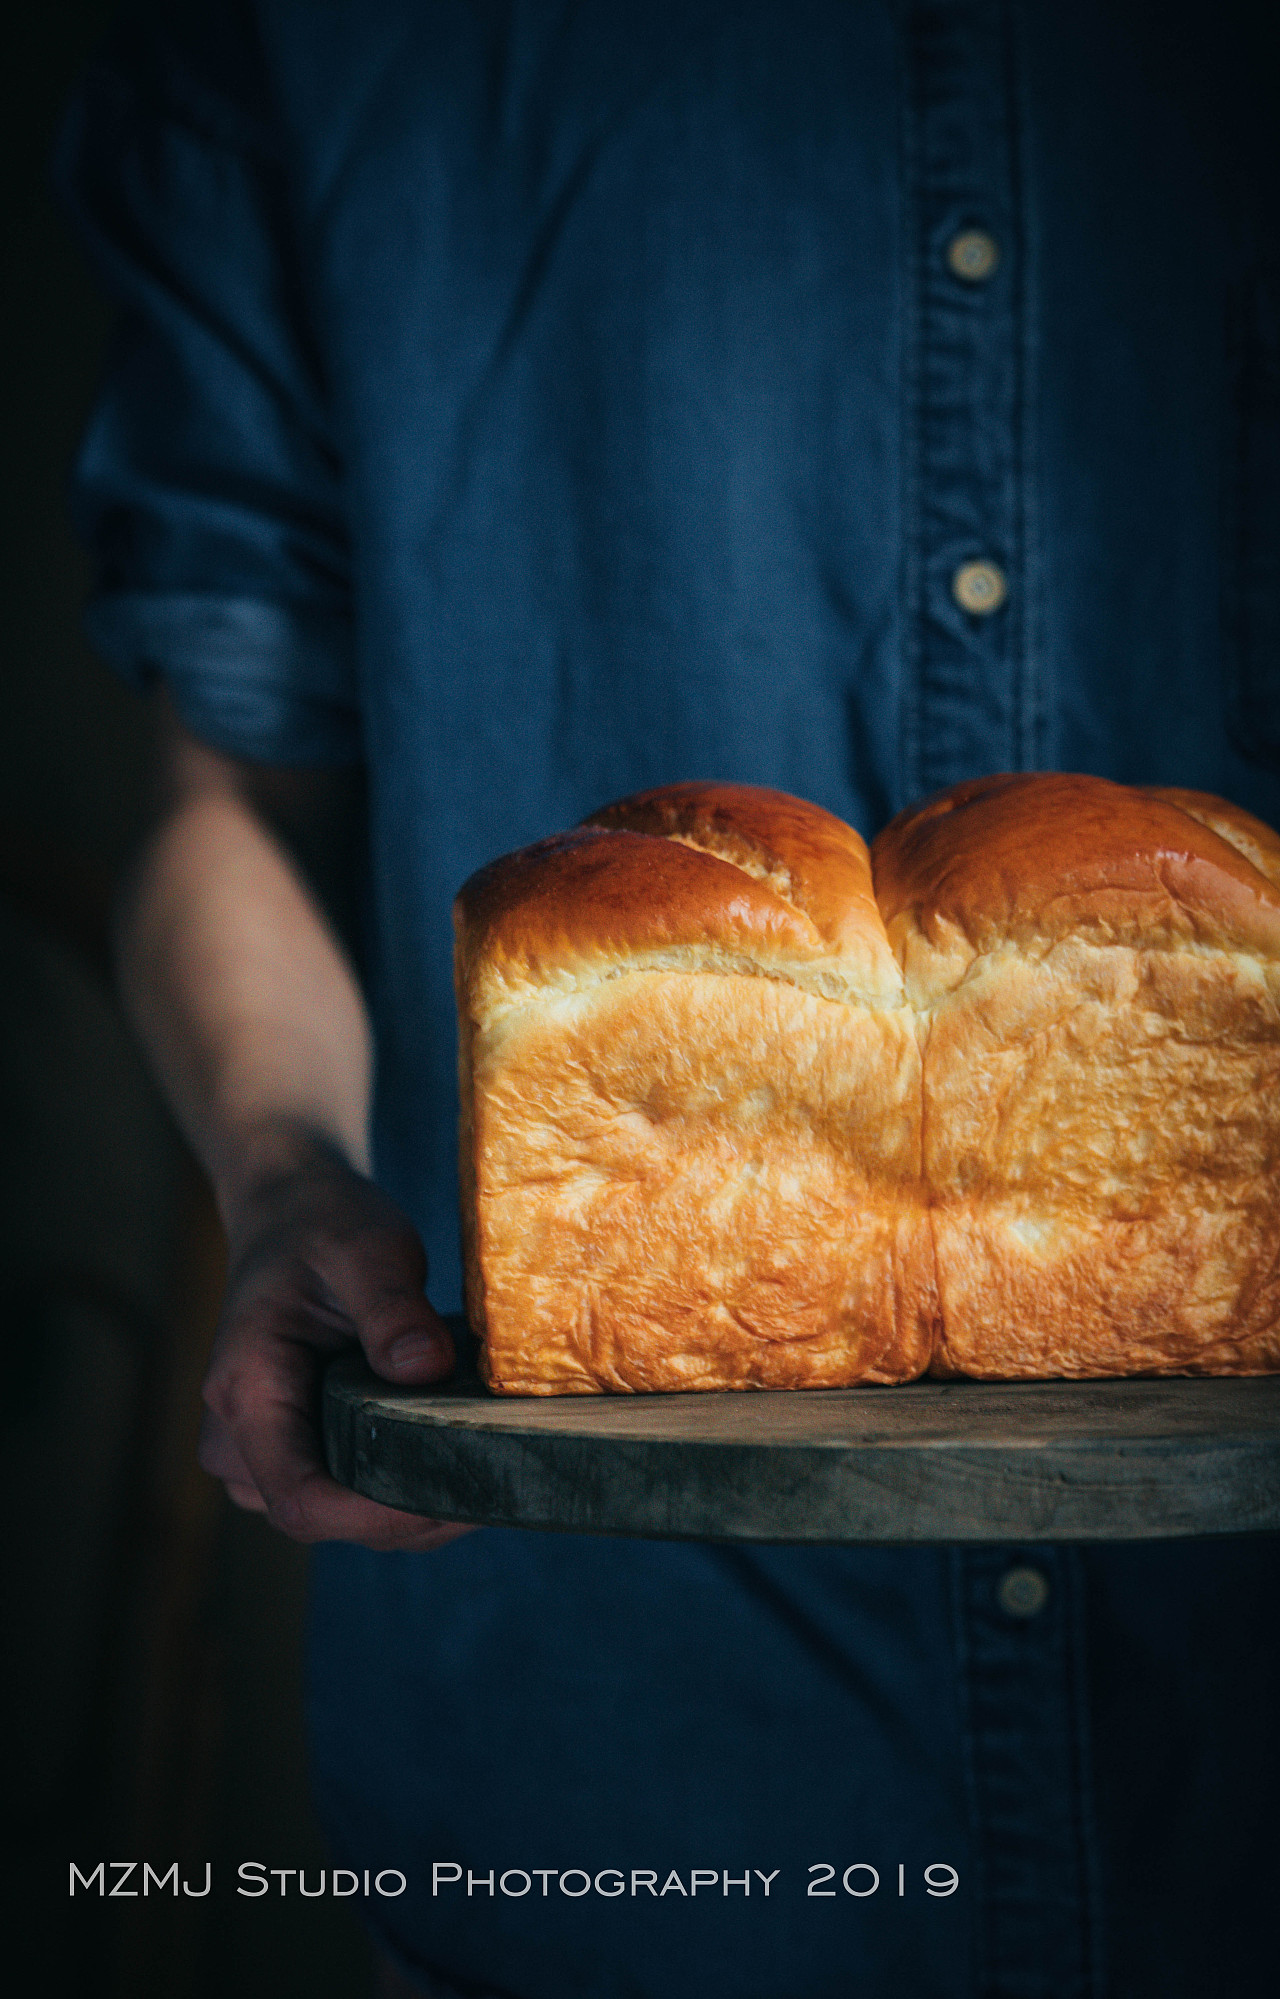 面包-焙康食品无锡有限公司